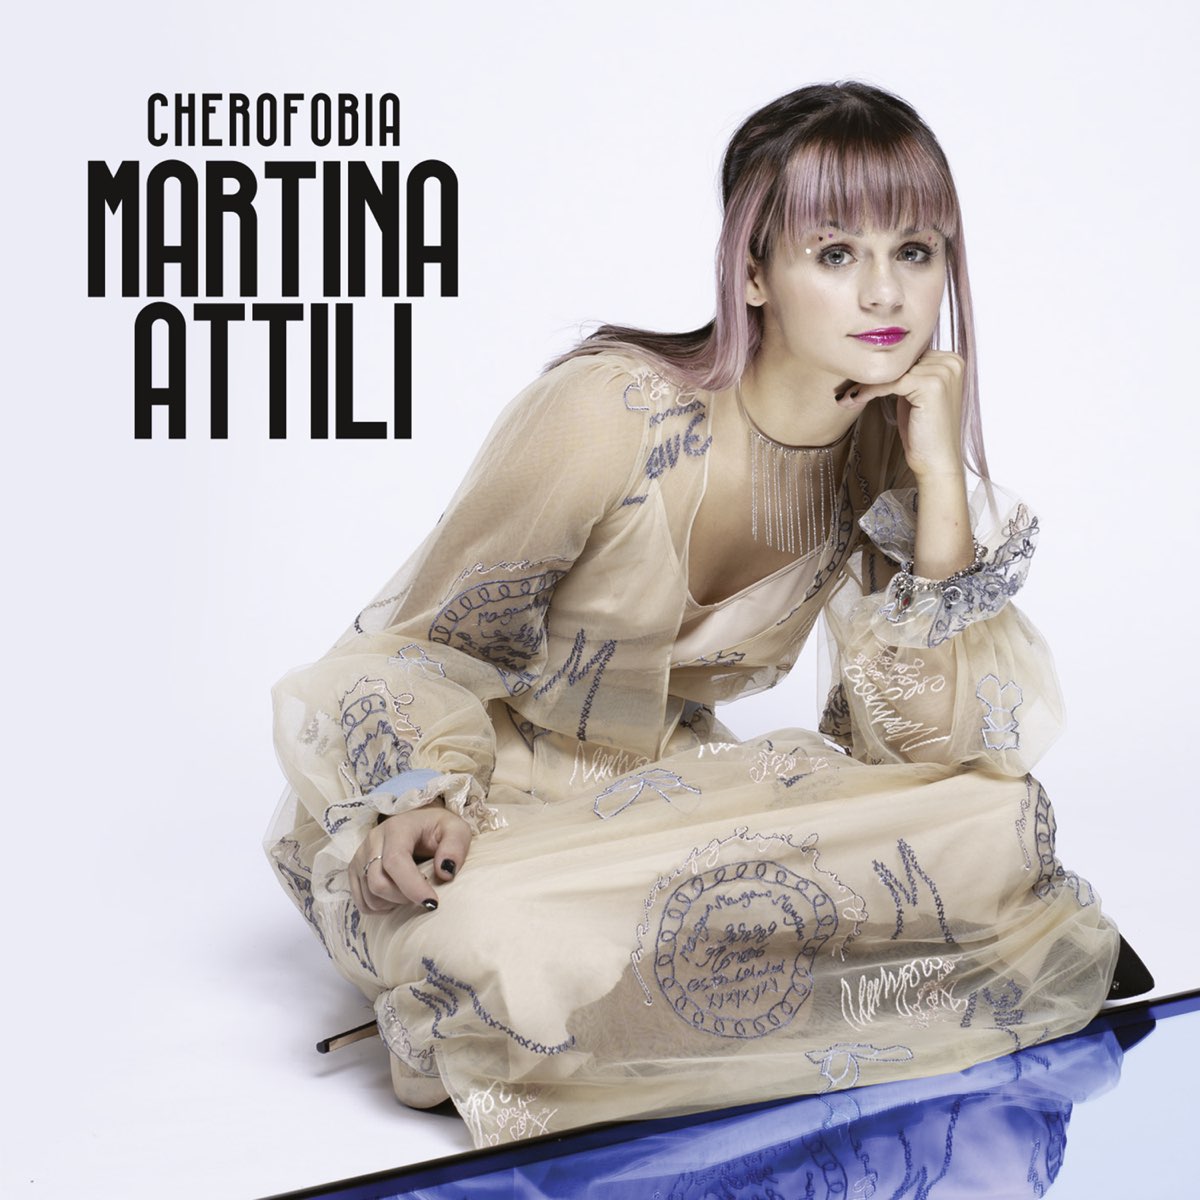 Martina Attili Cherofobia cover artwork